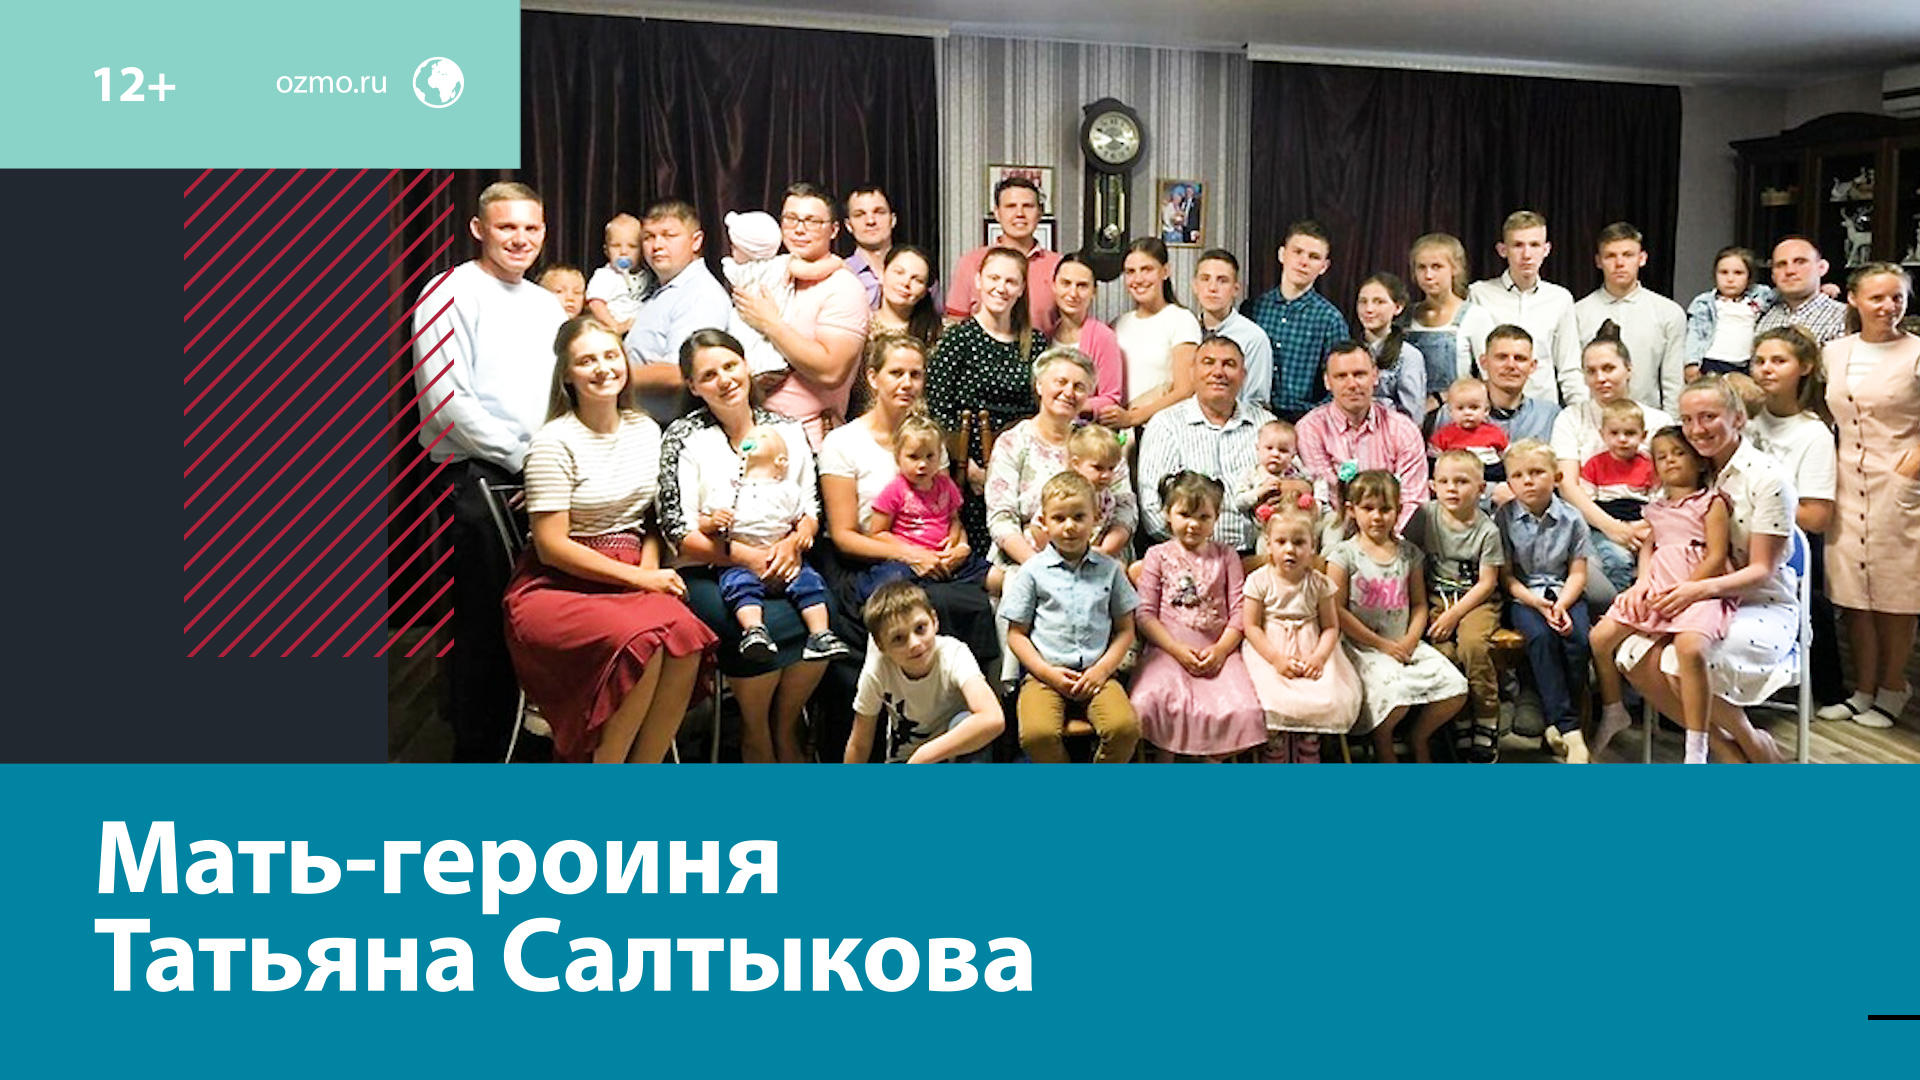 Мать-героиня Татьяна Салтыкова и её большая семья — Москва FM